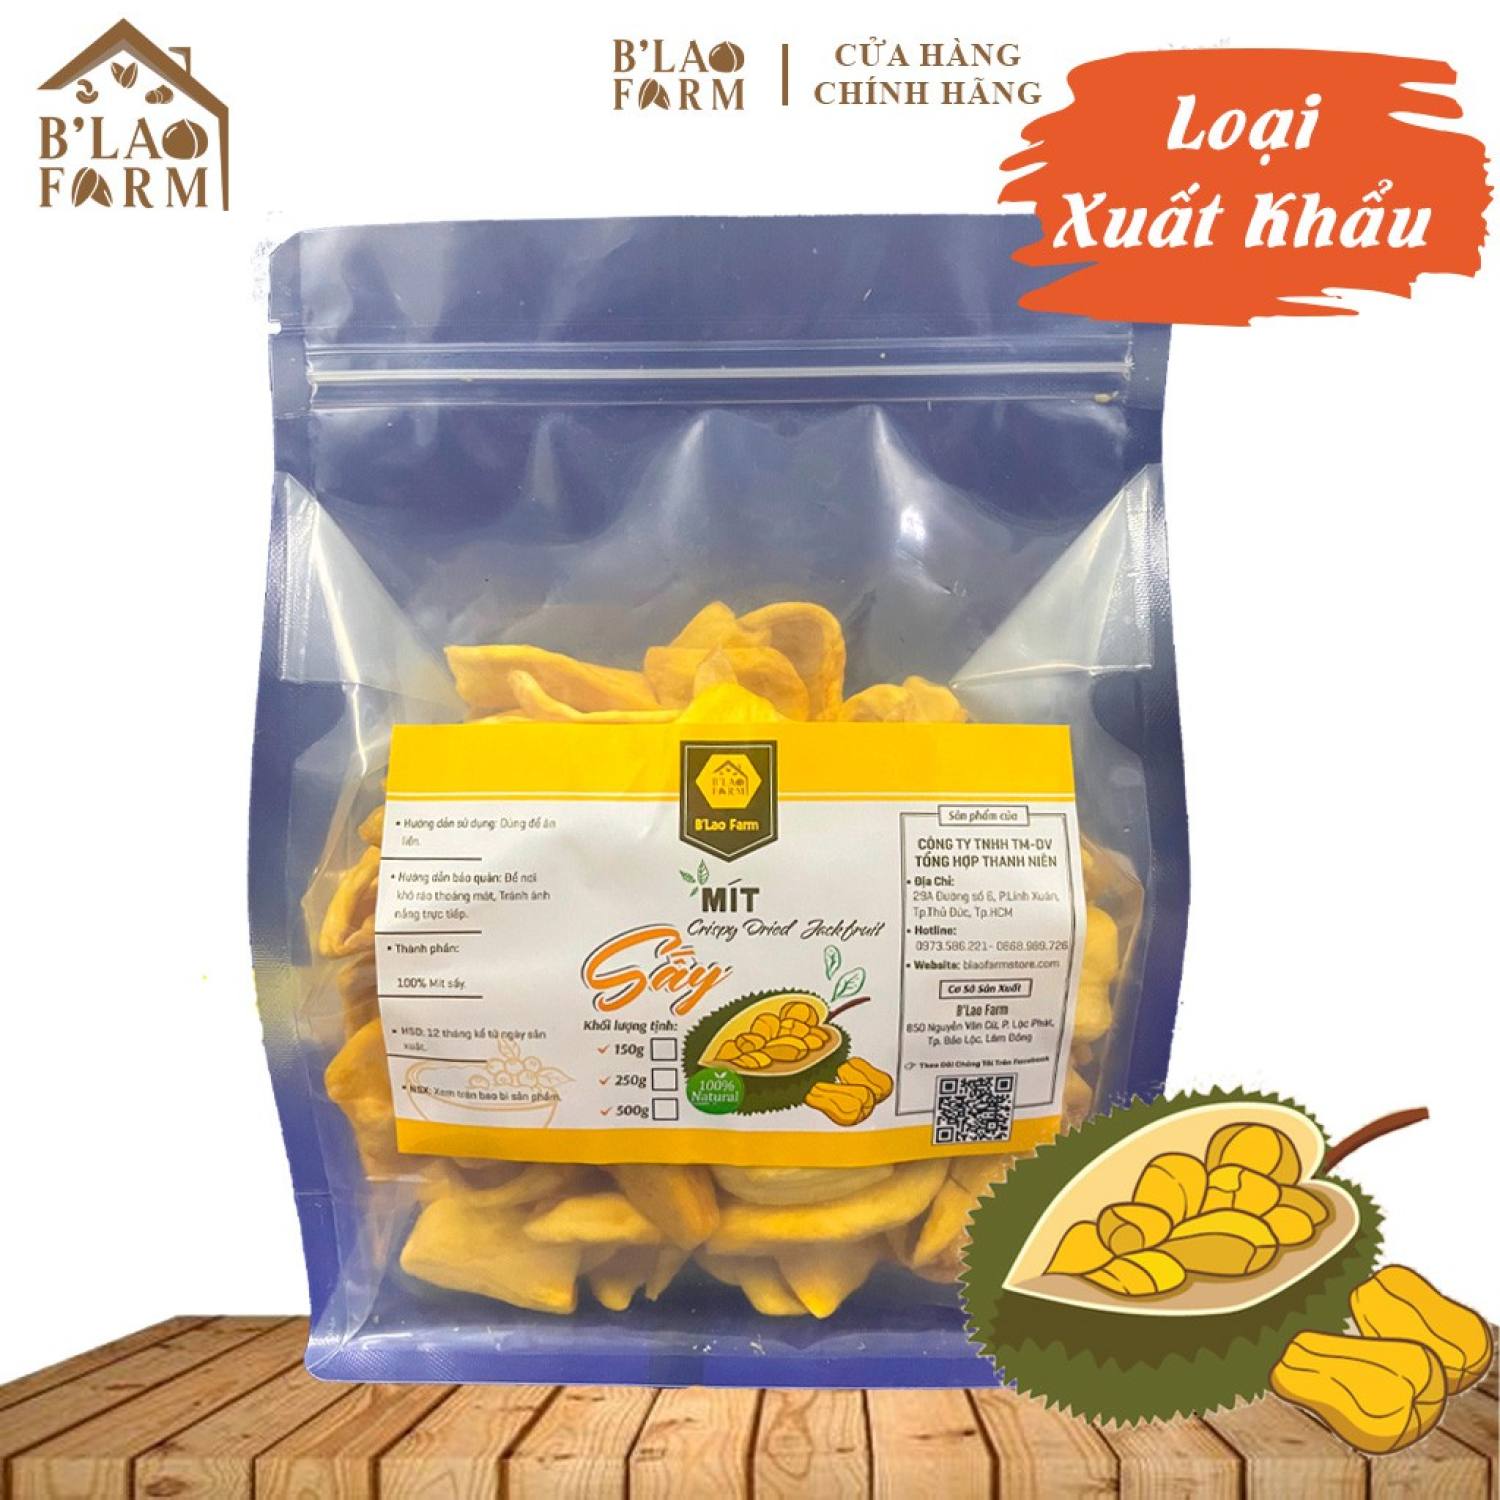 Mít sấy B Lao Farm hoa quả sấy khô đặc sản ĐÀ LẠT hàng xuất khẩu l ại 1